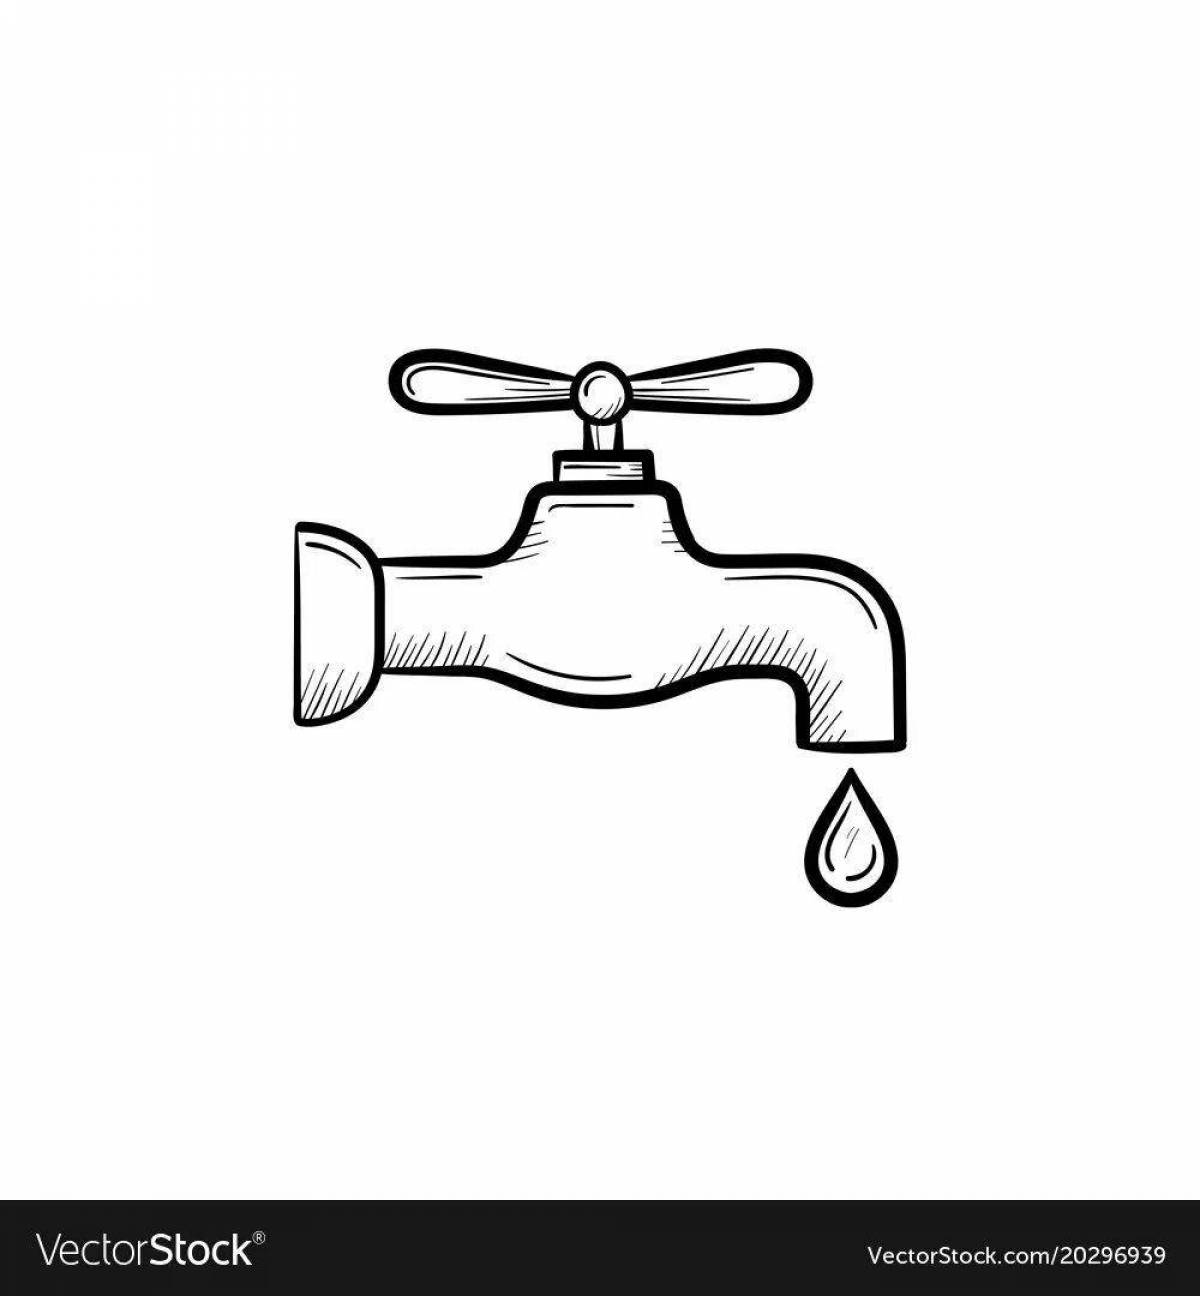 Children's water faucet #11